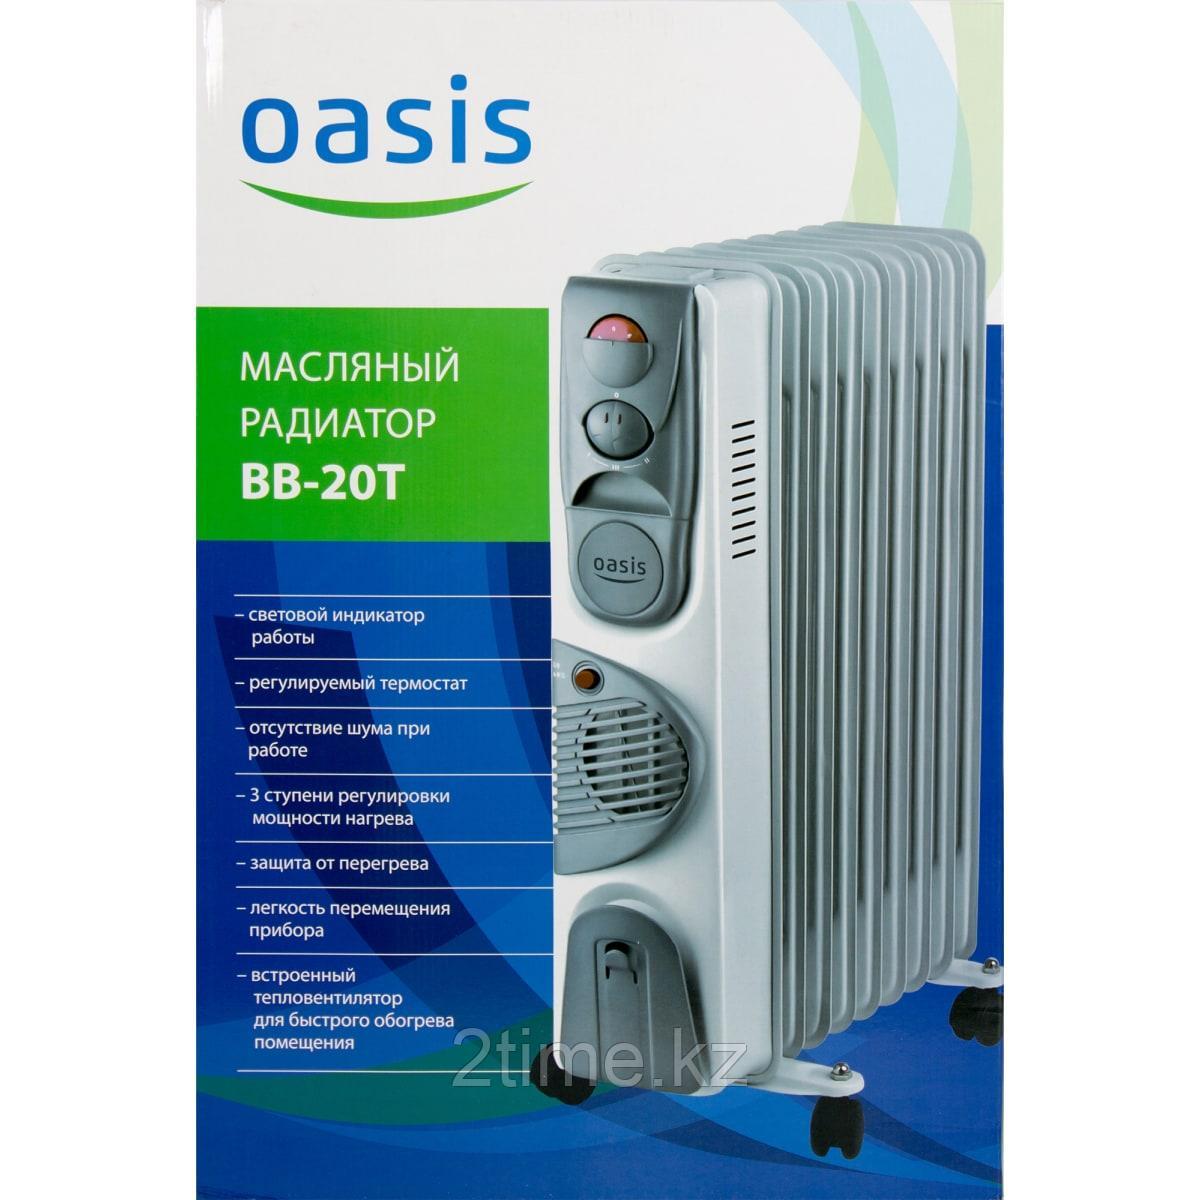 Масляный радиатор Oasis BB-20T, 2кВт, 9-секций, Встроенный вентилятор, фото 1